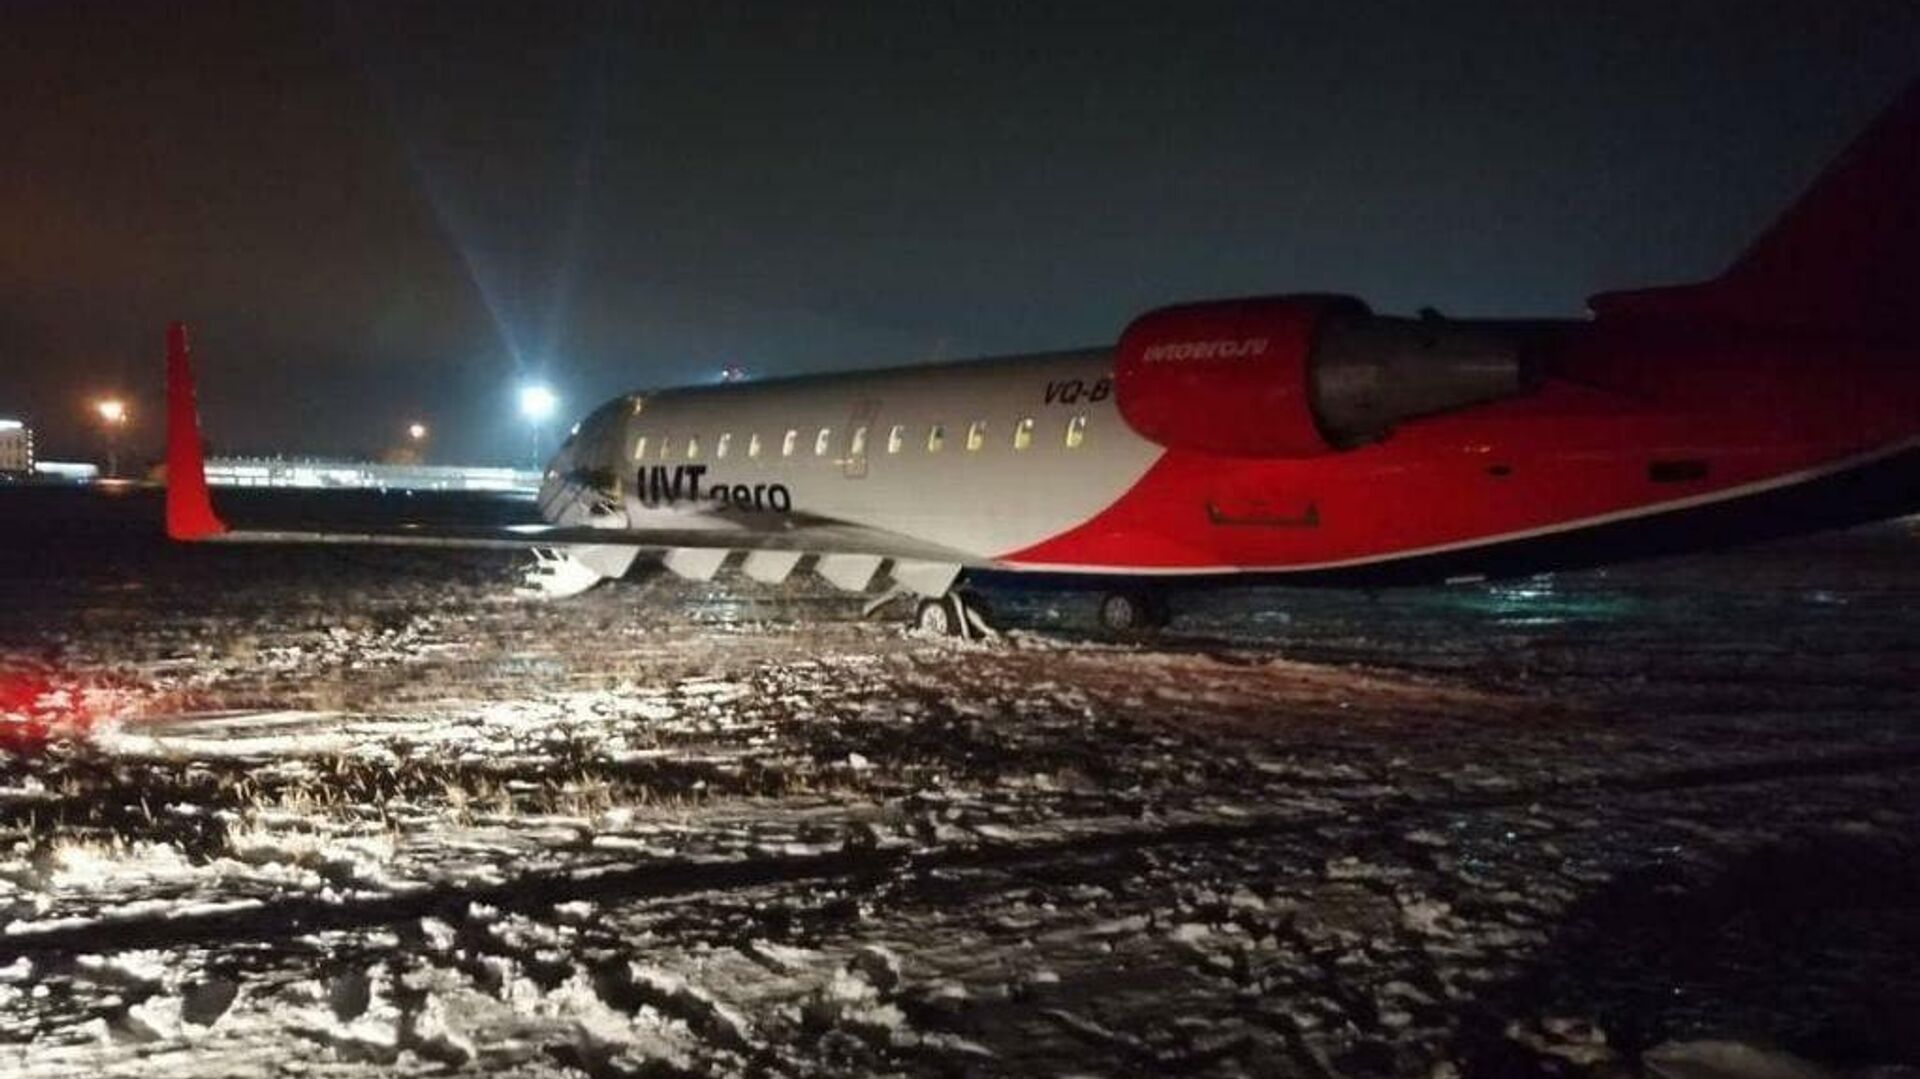 Самолет Bombardier авиакомпании UVT Aero выкатился за пределы взлетно-посадочной полосы в аэропорту Челябинска - РИА Новости, 1920, 01.12.2021